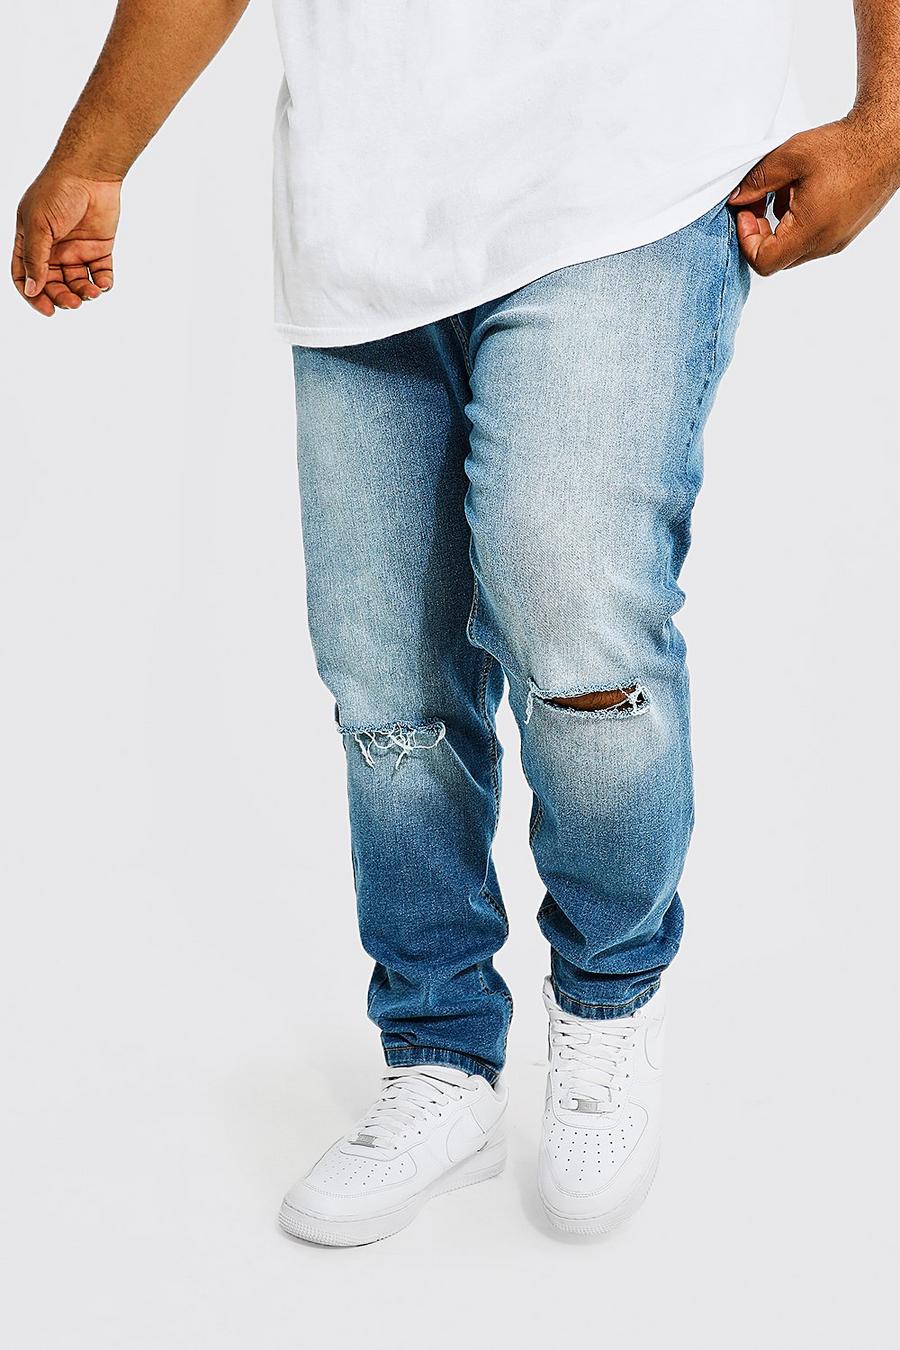 כחול ביניים azzurro ג'ינס סקיני עם שסע בברך, מידות גדולות